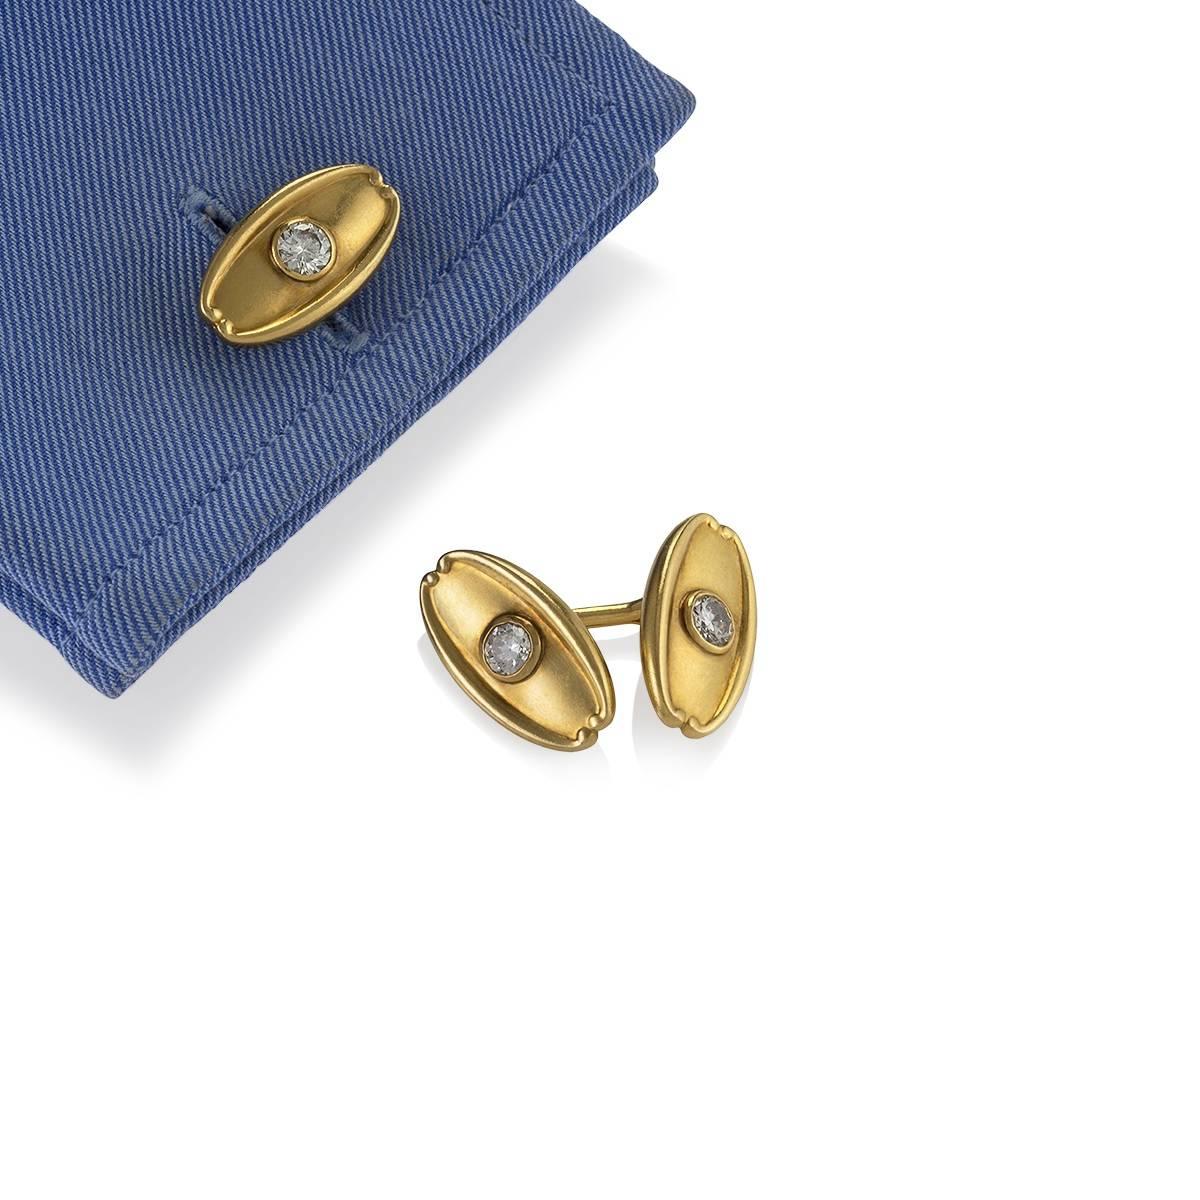 Ein Paar antike Manschettenknöpfe aus 18 Karat Gold mit Diamanten von Tiffany & Co. Die schweren, rautenförmigen Manschettenknöpfe haben 4 Diamanten im alten europäischen Schliff mit einem ungefähren Gesamtgewicht von 1,50 Karat, Farbe H-I, Reinheit